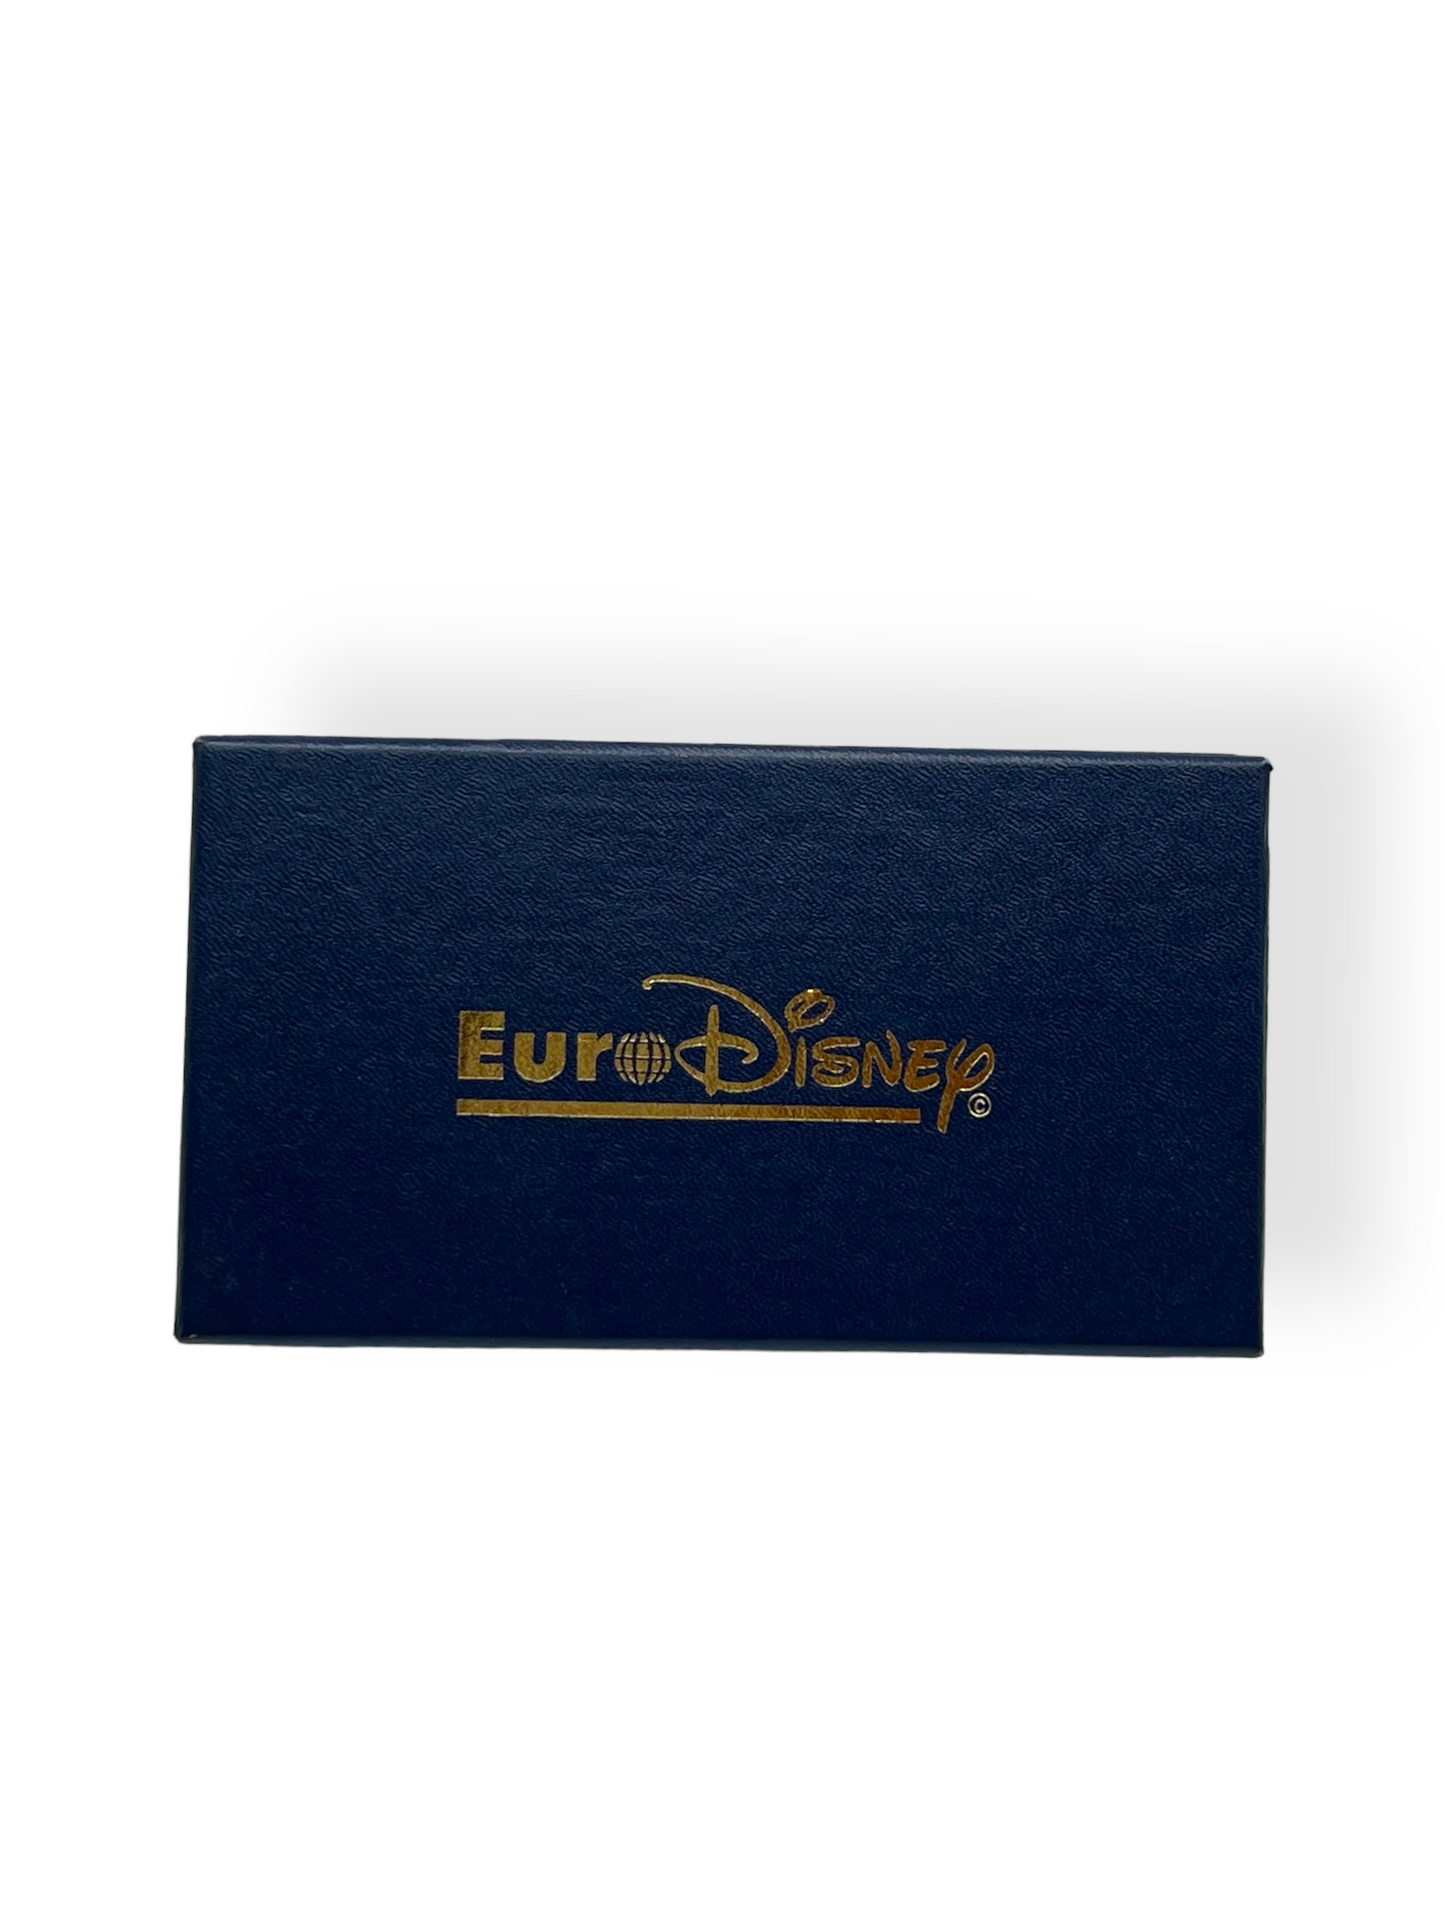 Euro Disney Opening Day 6 Pin Set